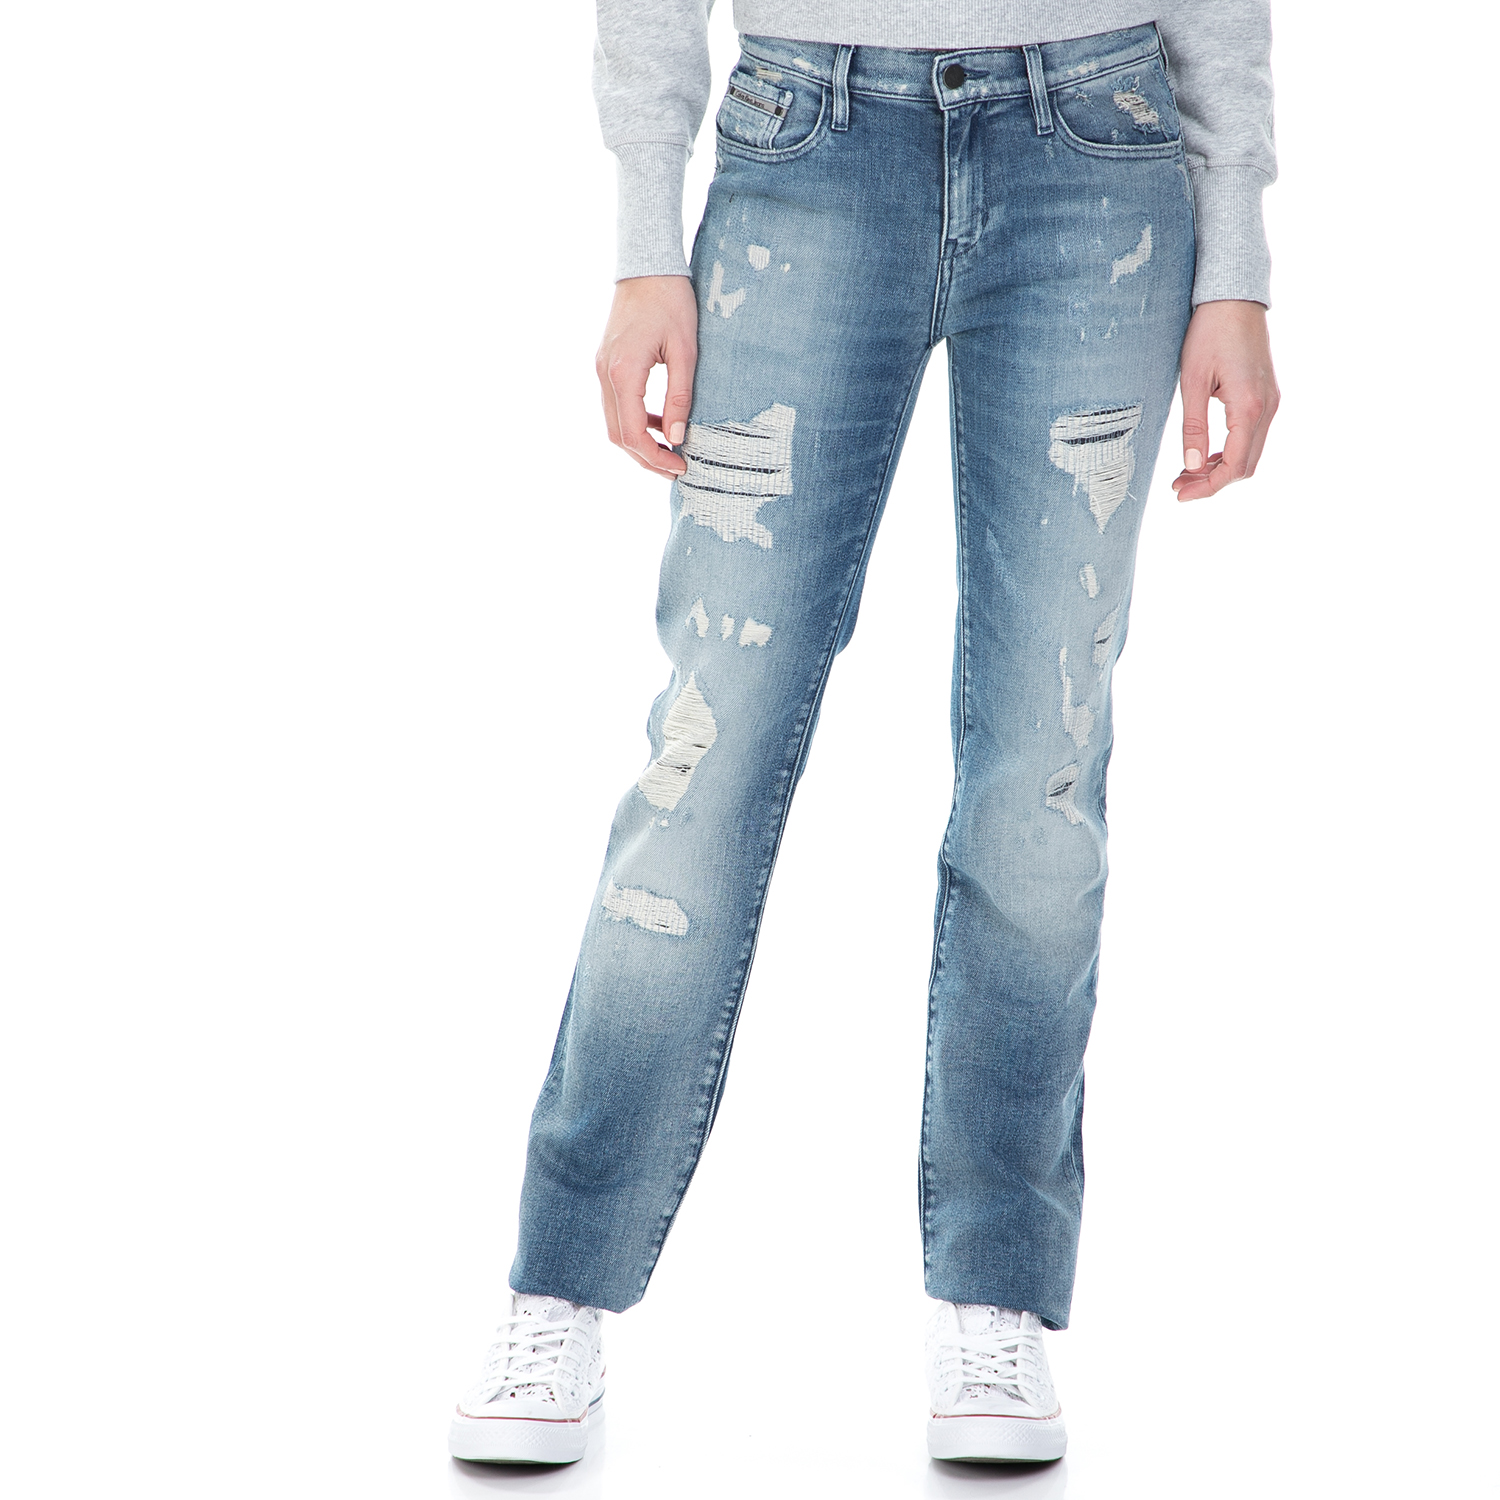 Γυναικεία/Ρούχα/Τζίν/Straight CALVIN KLEIN JEANS - Γυναικείο mid rise straight τζιν παντελόνι Calvin Klein Jeans μπλε με σκισίματα